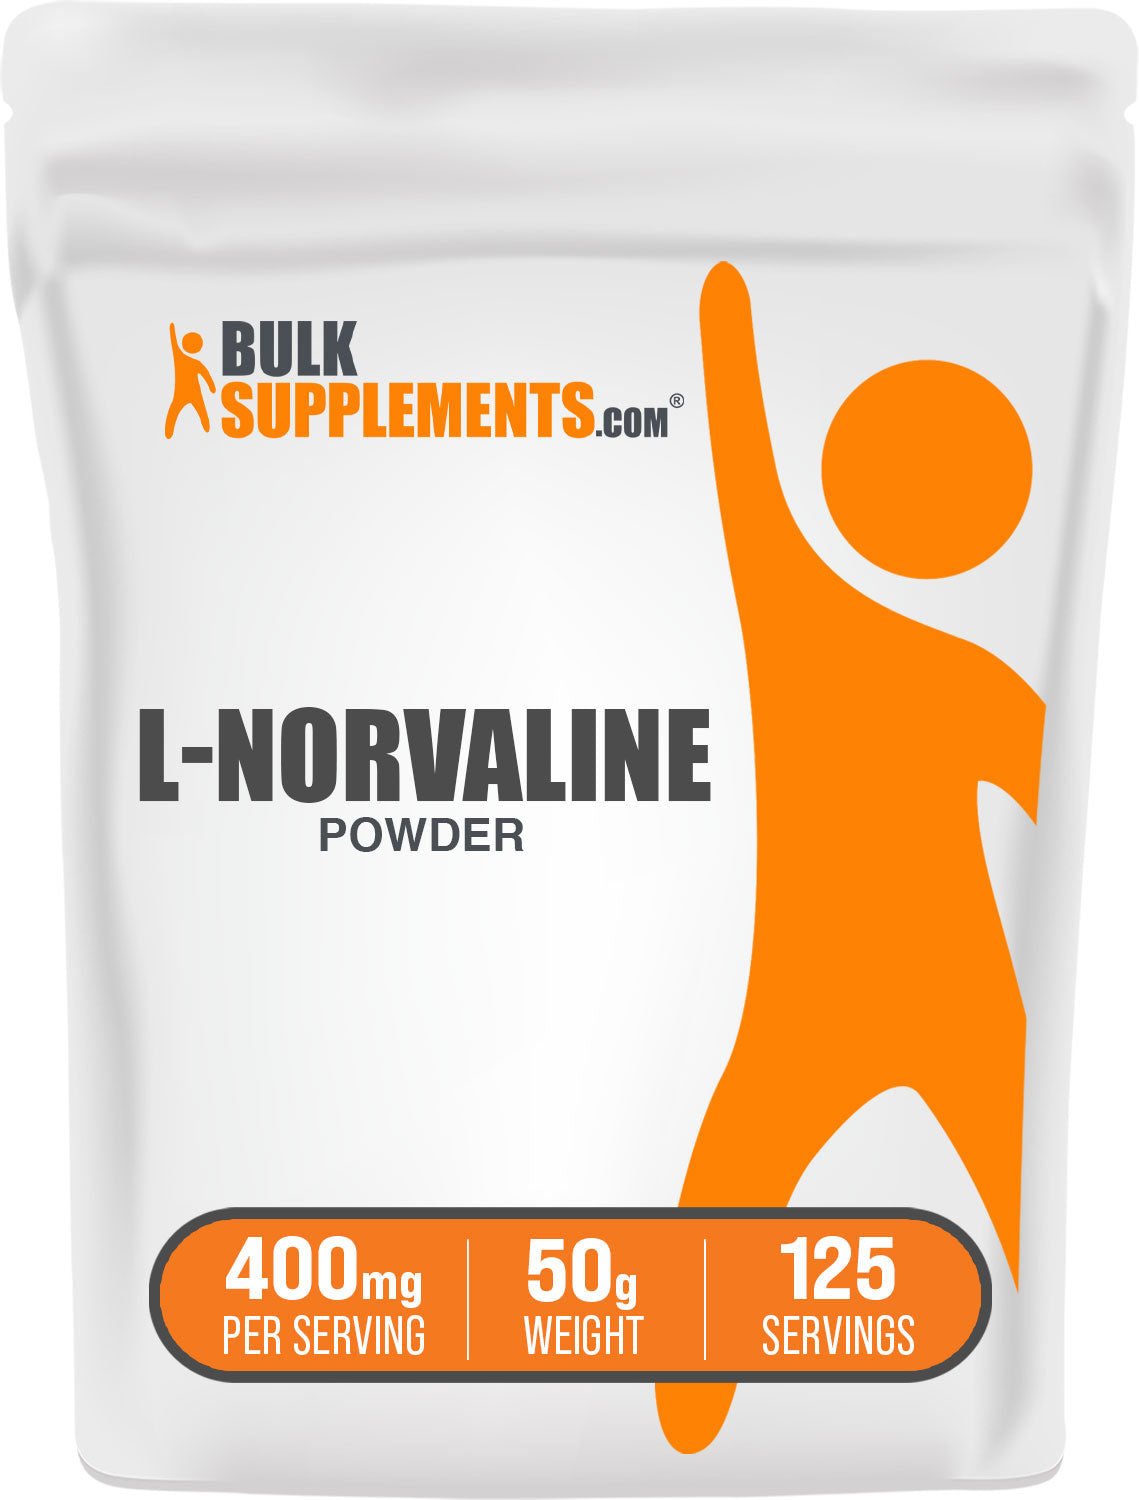 BulkSupplements.com L-Norvaline Powder 50g bag image